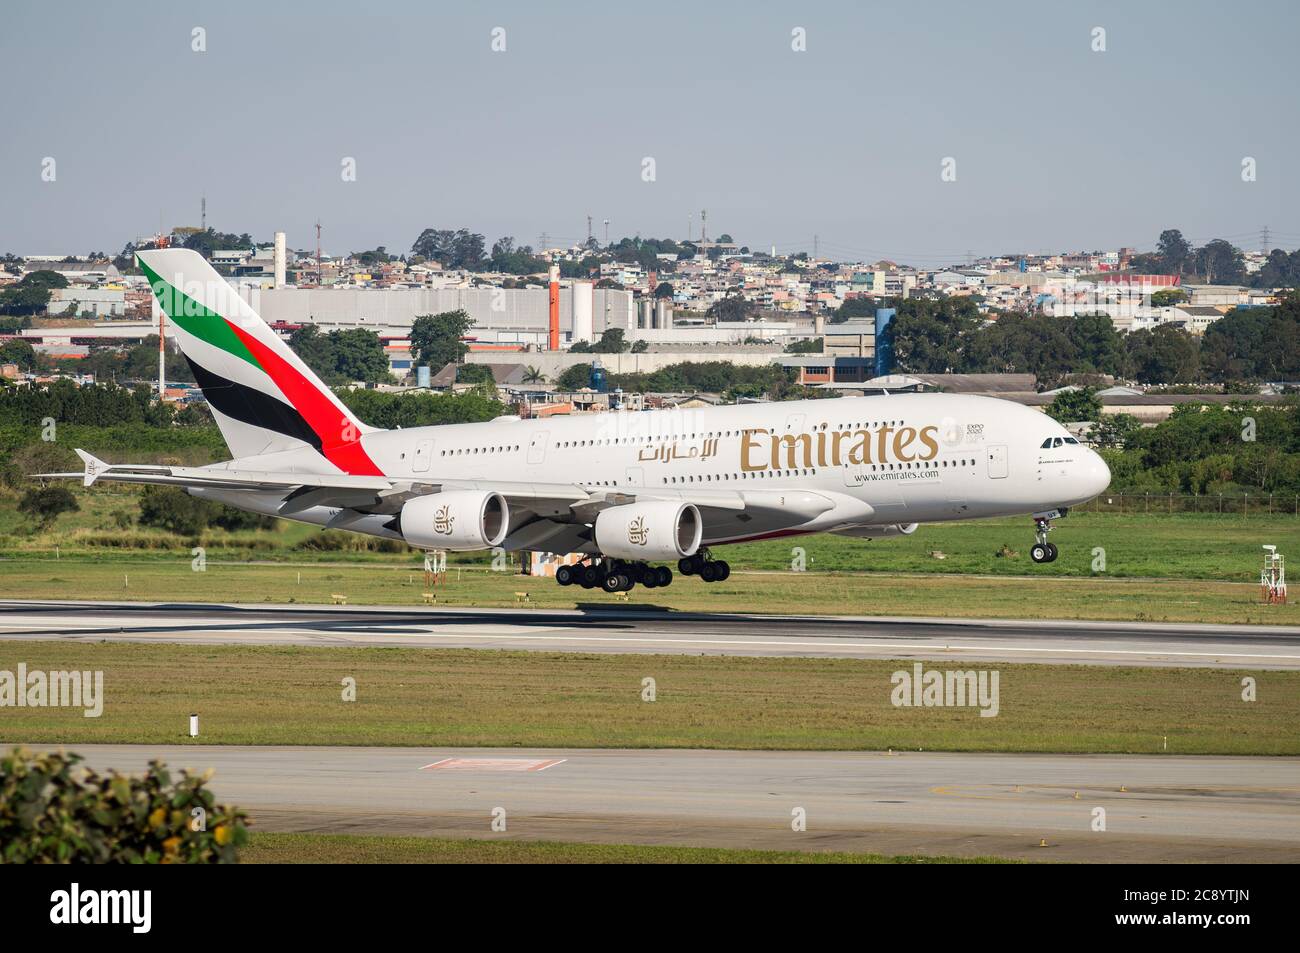 Emirates Airlines Airbus A380-800 (avions à gros corps - Reg A6-eu) quelques instants avant de toucher la piste 27R de l'aéroport international de Sao Paulo/Guarulhos. Banque D'Images